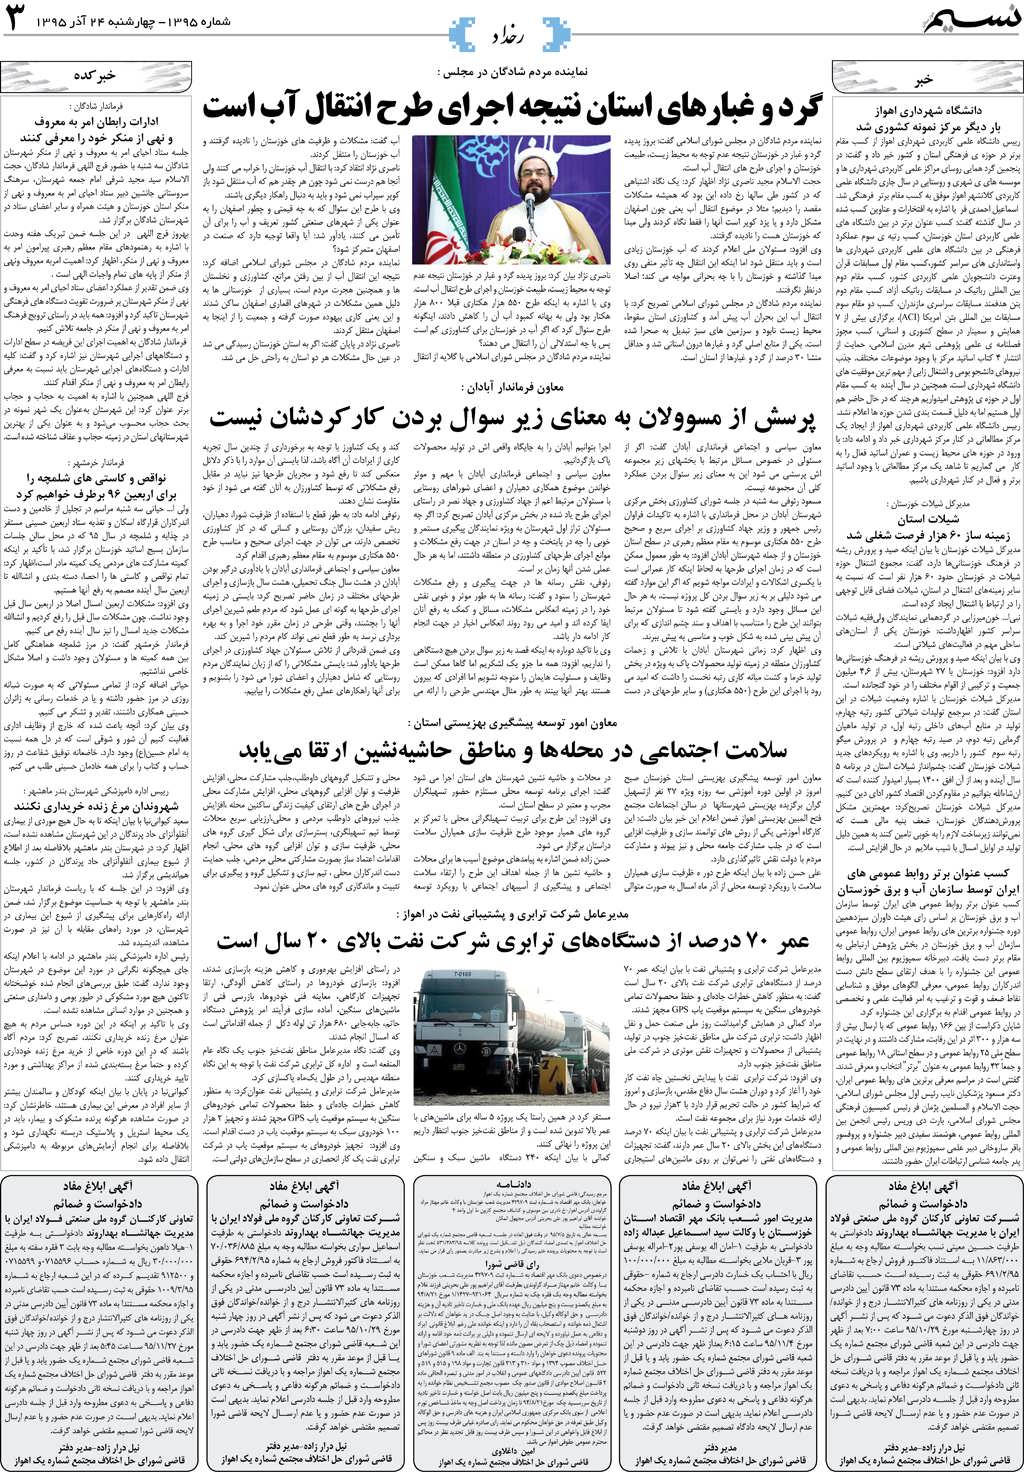 صفحه رخداد روزنامه نسیم شماره 1395